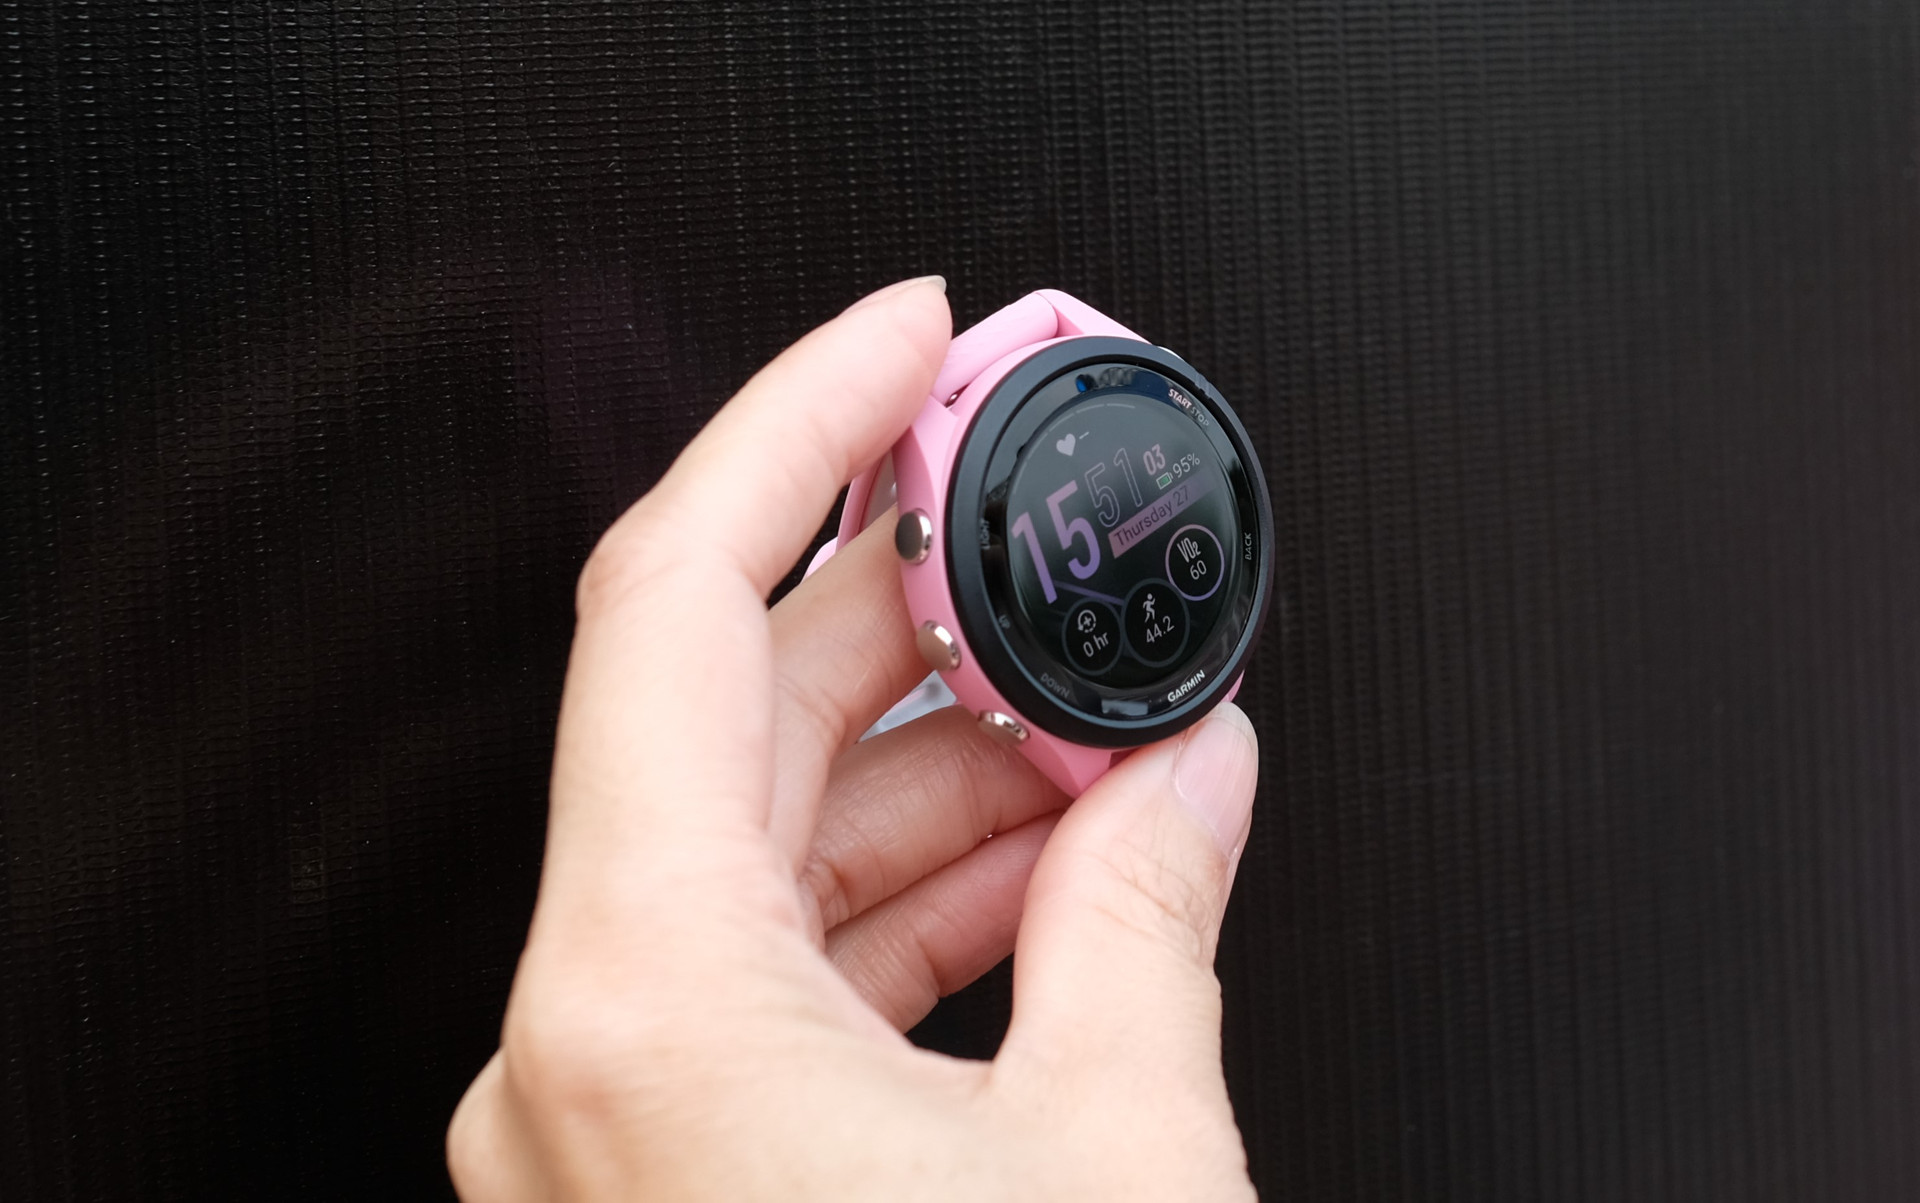 Garmin ra mắt đồng hồ chạy bộ GPS trang bị màn hình AMOLED đầu tiên thế giới, giá từ 11,7 triệu đồng - Ảnh 3.